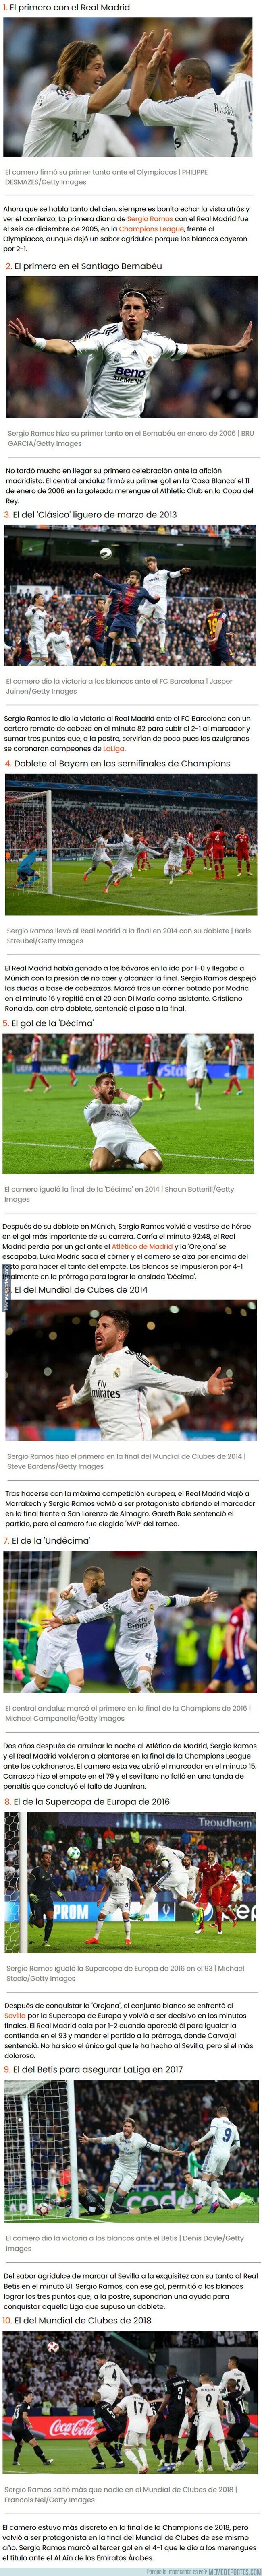 1119888 - Los 10 goles más importantes de Sergio Ramos con el Real Madrid